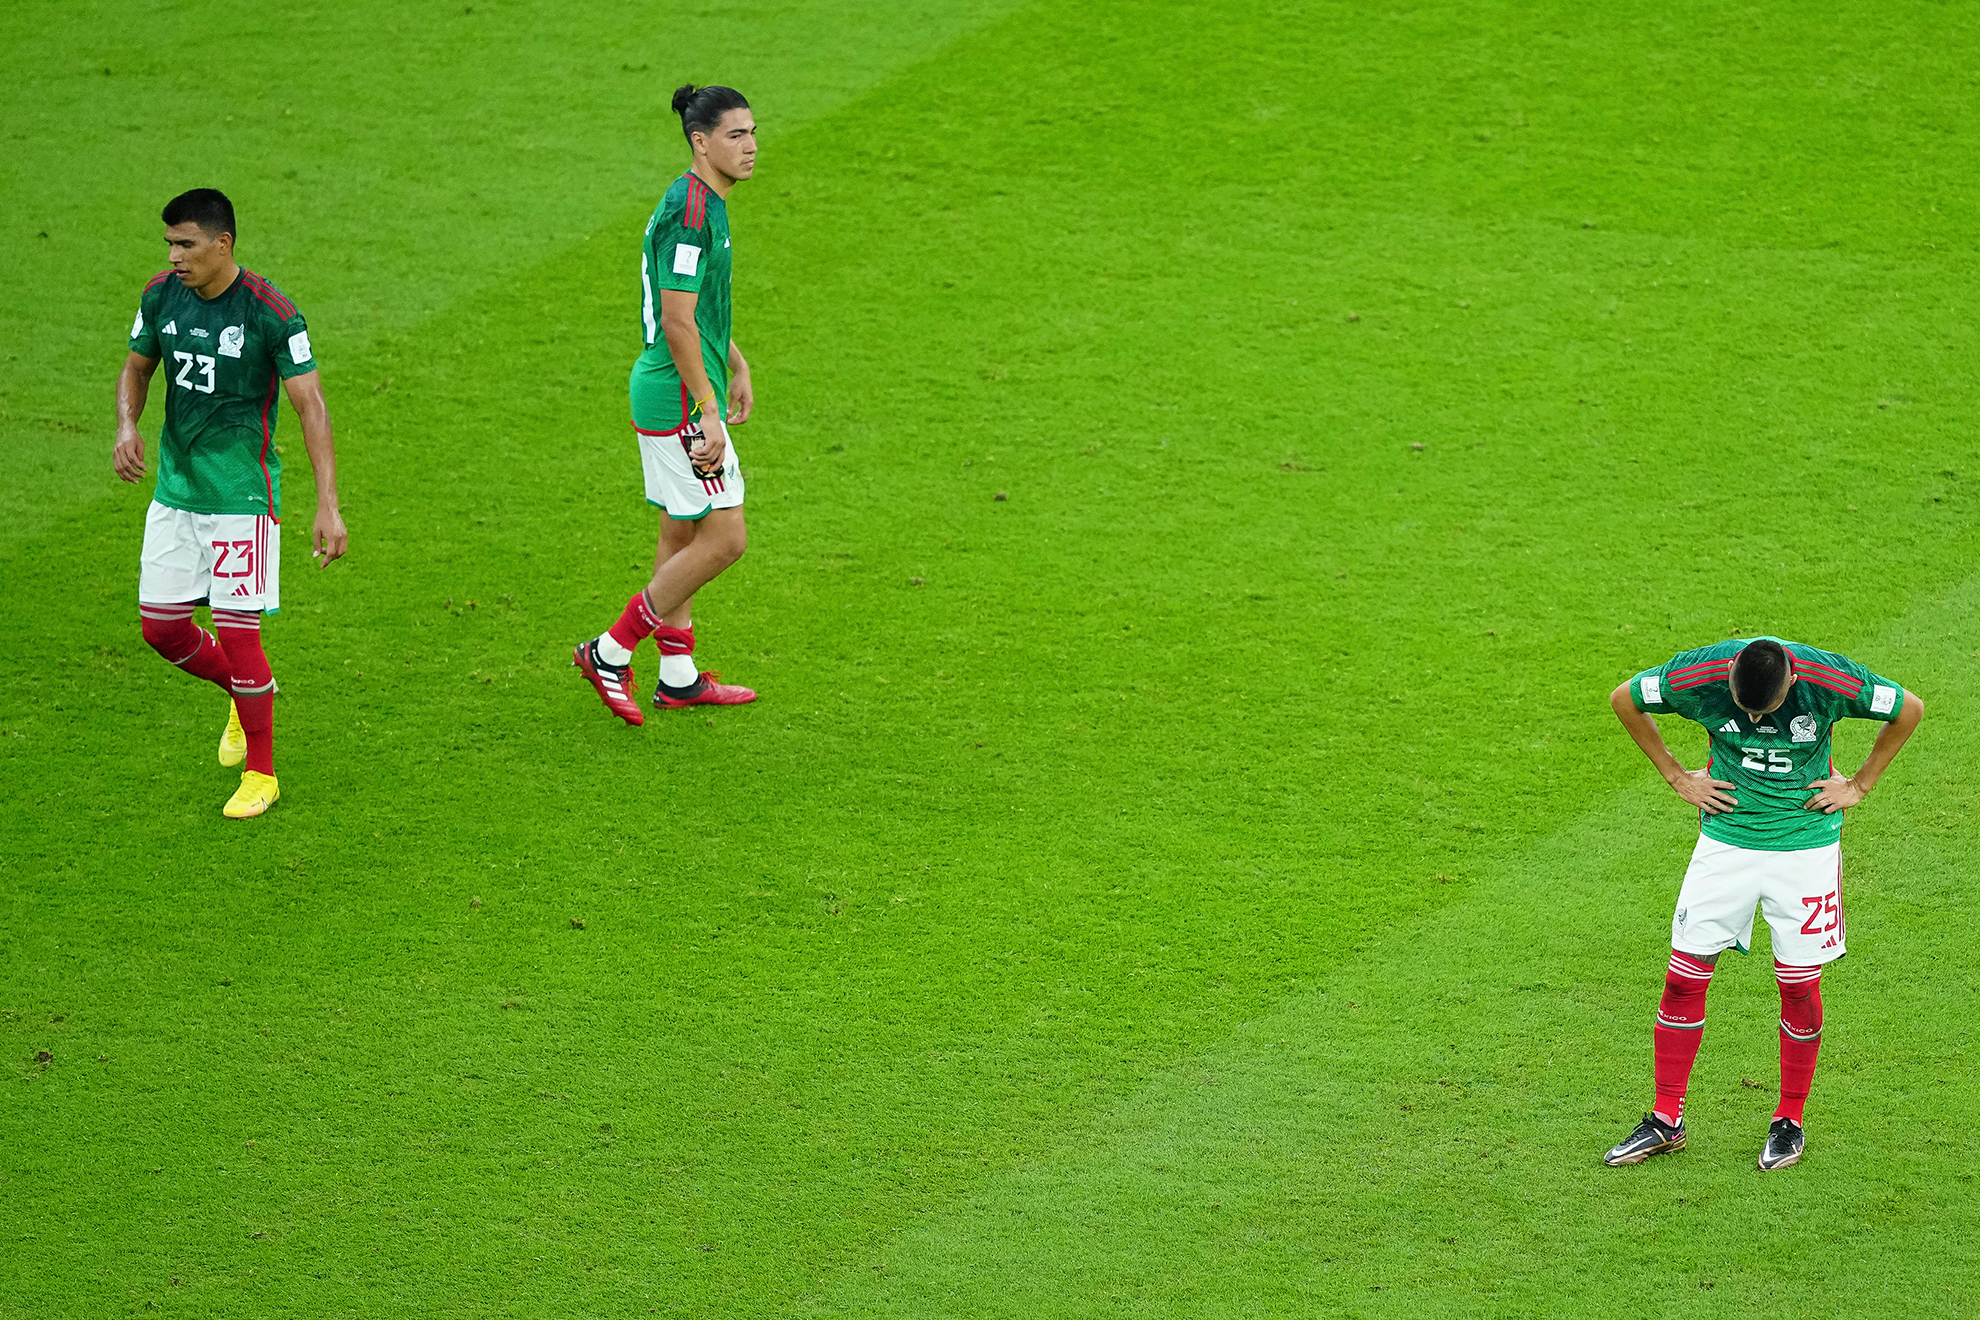 La selección mexicana sin gol en el Mundial de Qatar 2022 | Imago7